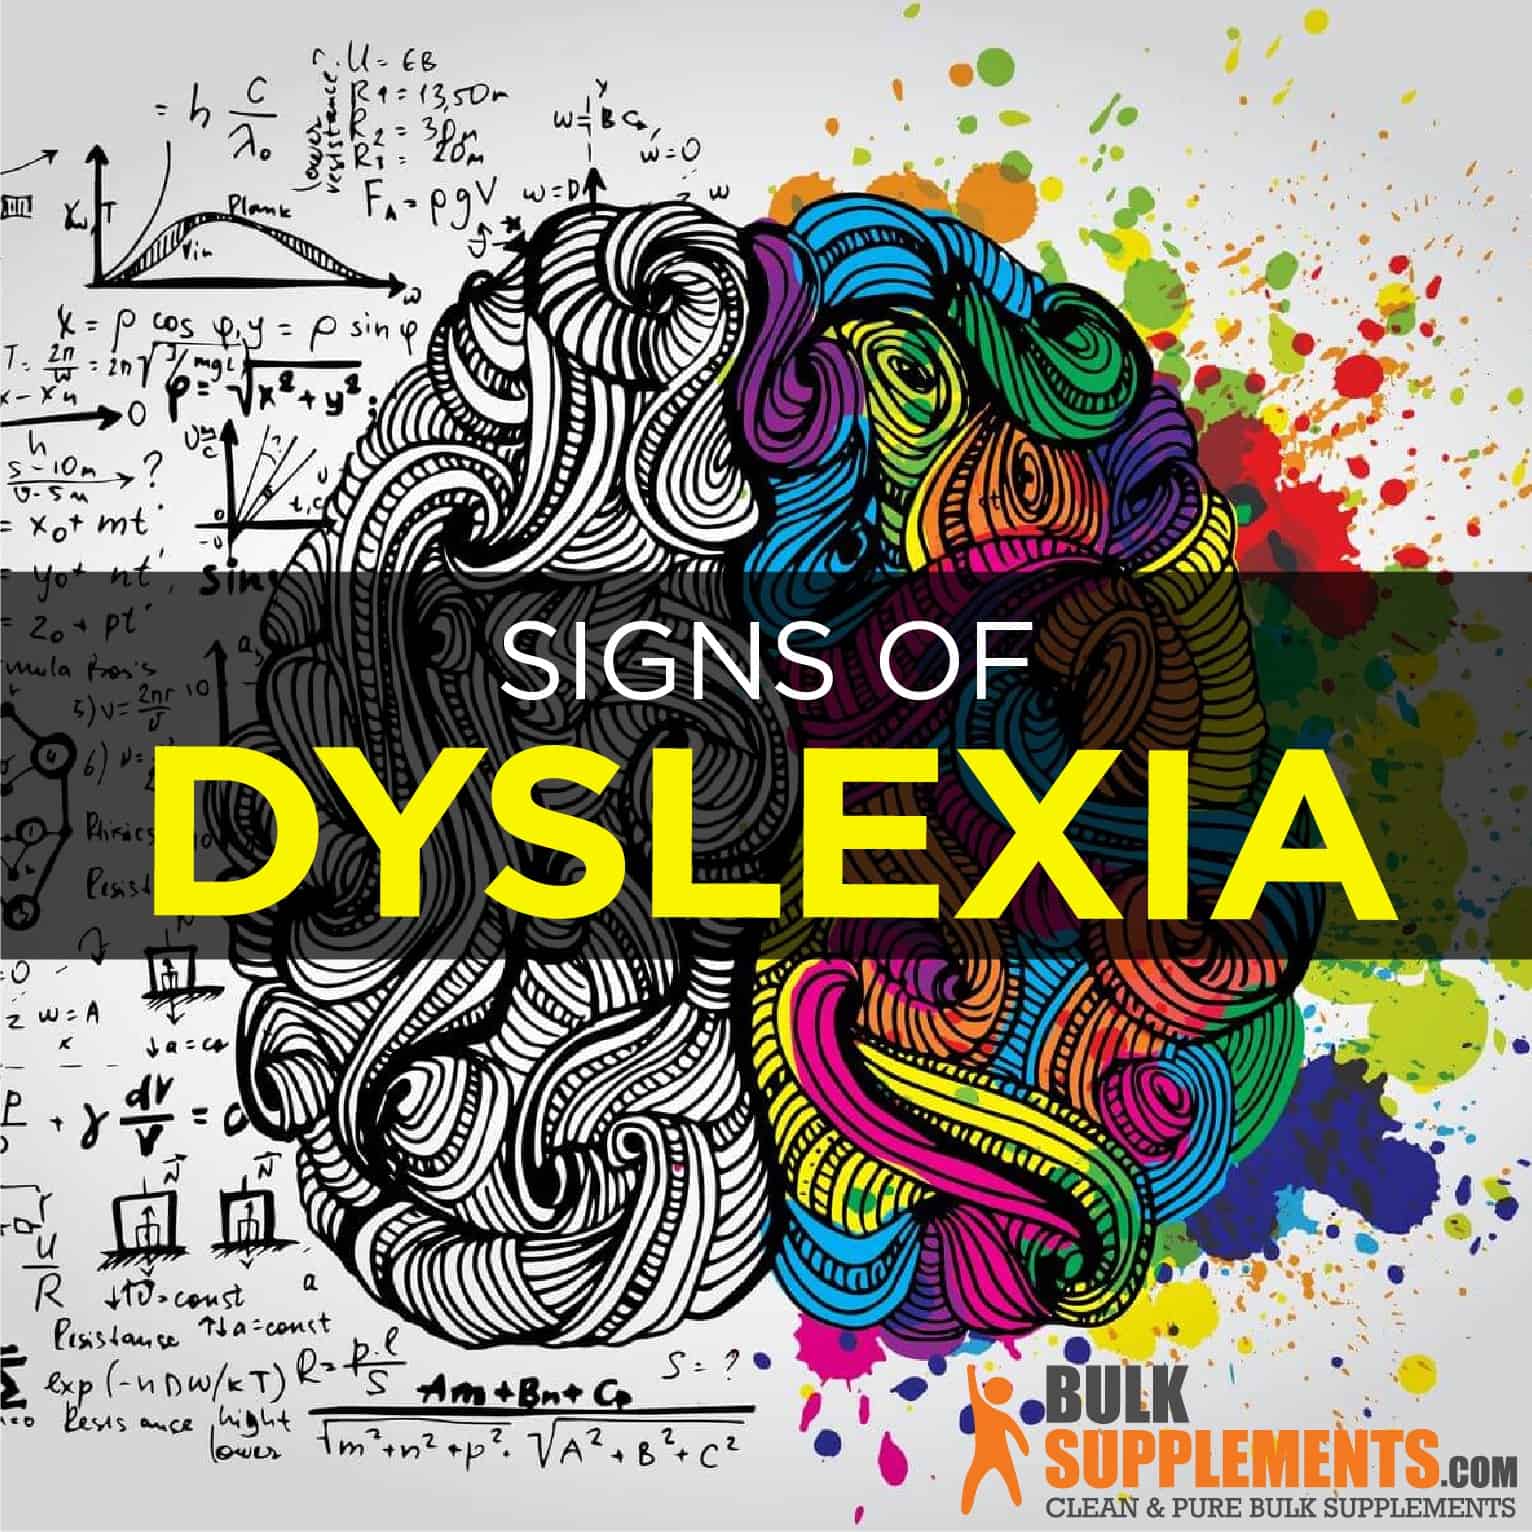 dyslexia-symptoms-causes-treatment